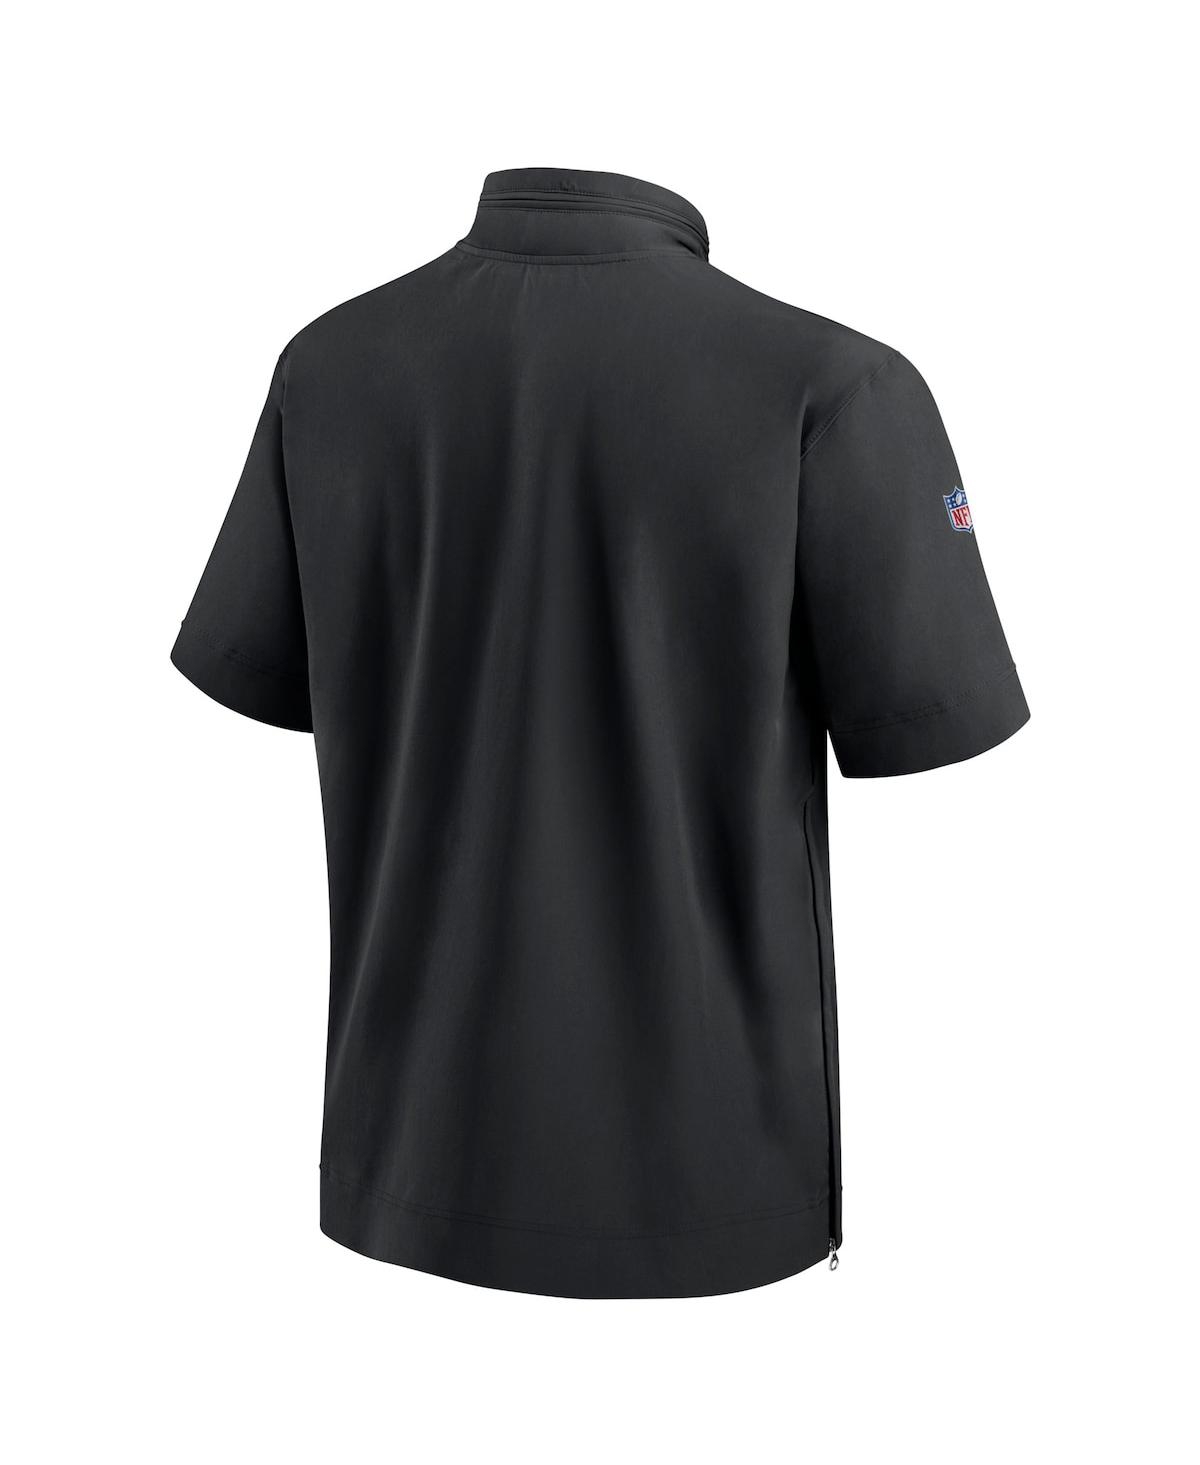 Shop Nike Men's  Black Las Vegas Raiders Sideline Coach Short Sleeve Hoodie Quarter-zip Jacket